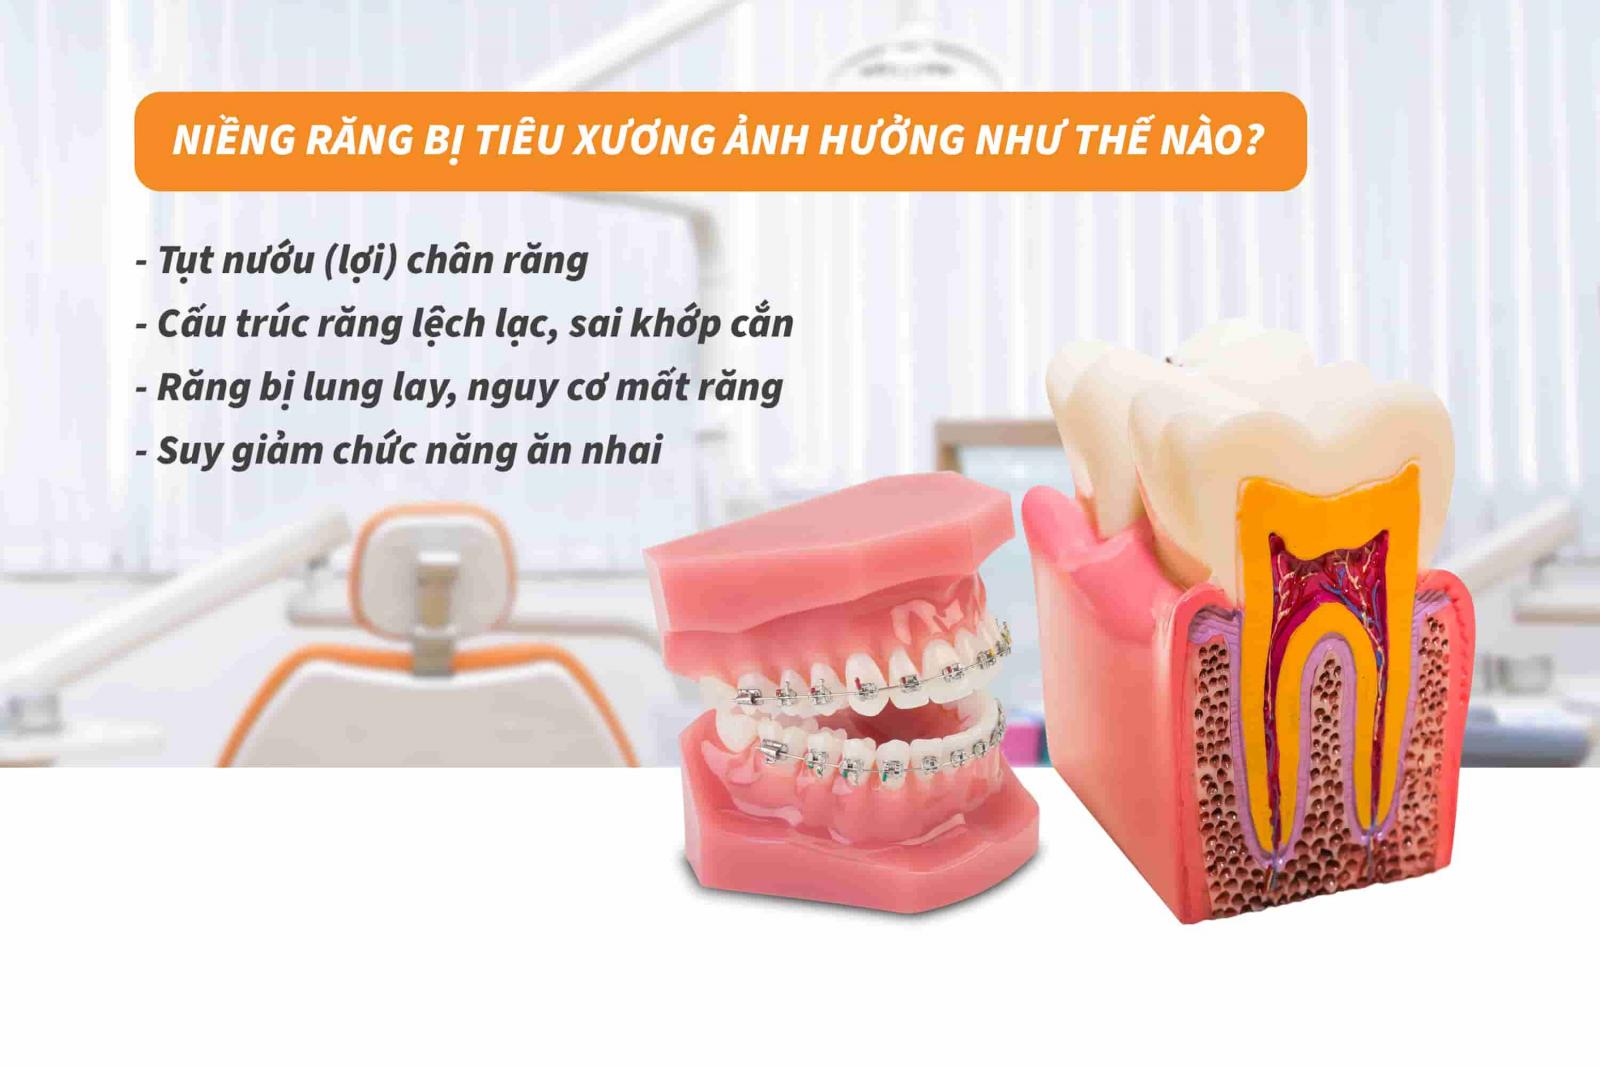 Niềng răng bị tiêu xương ảnh hưởng như thế nào?